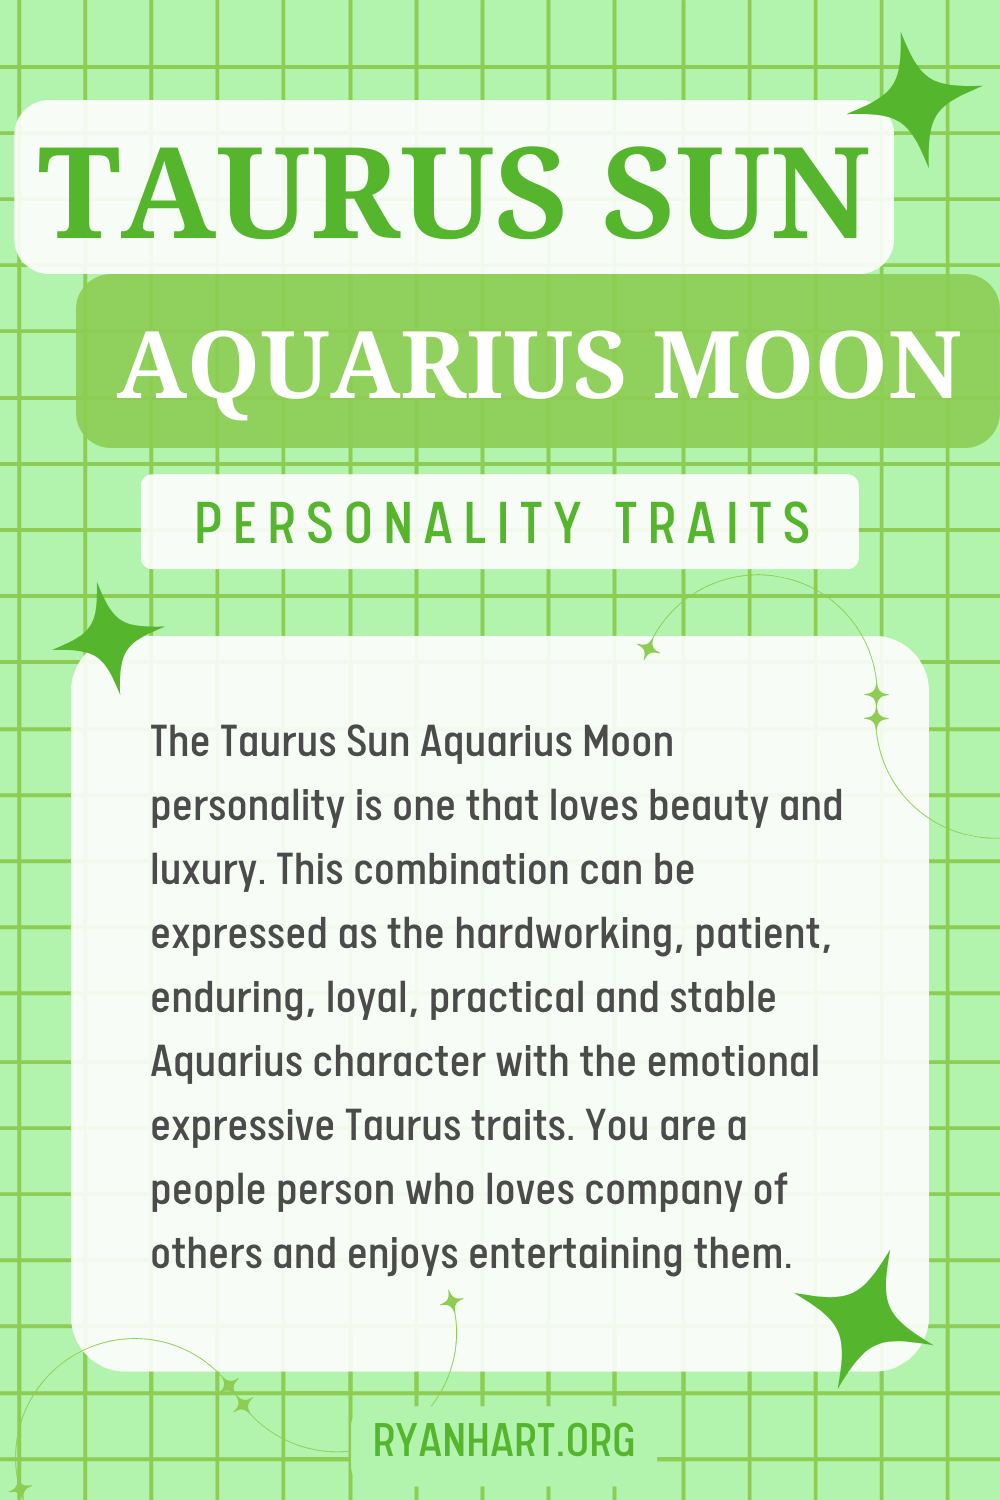 Taurus Sun Aquarius Moon Description